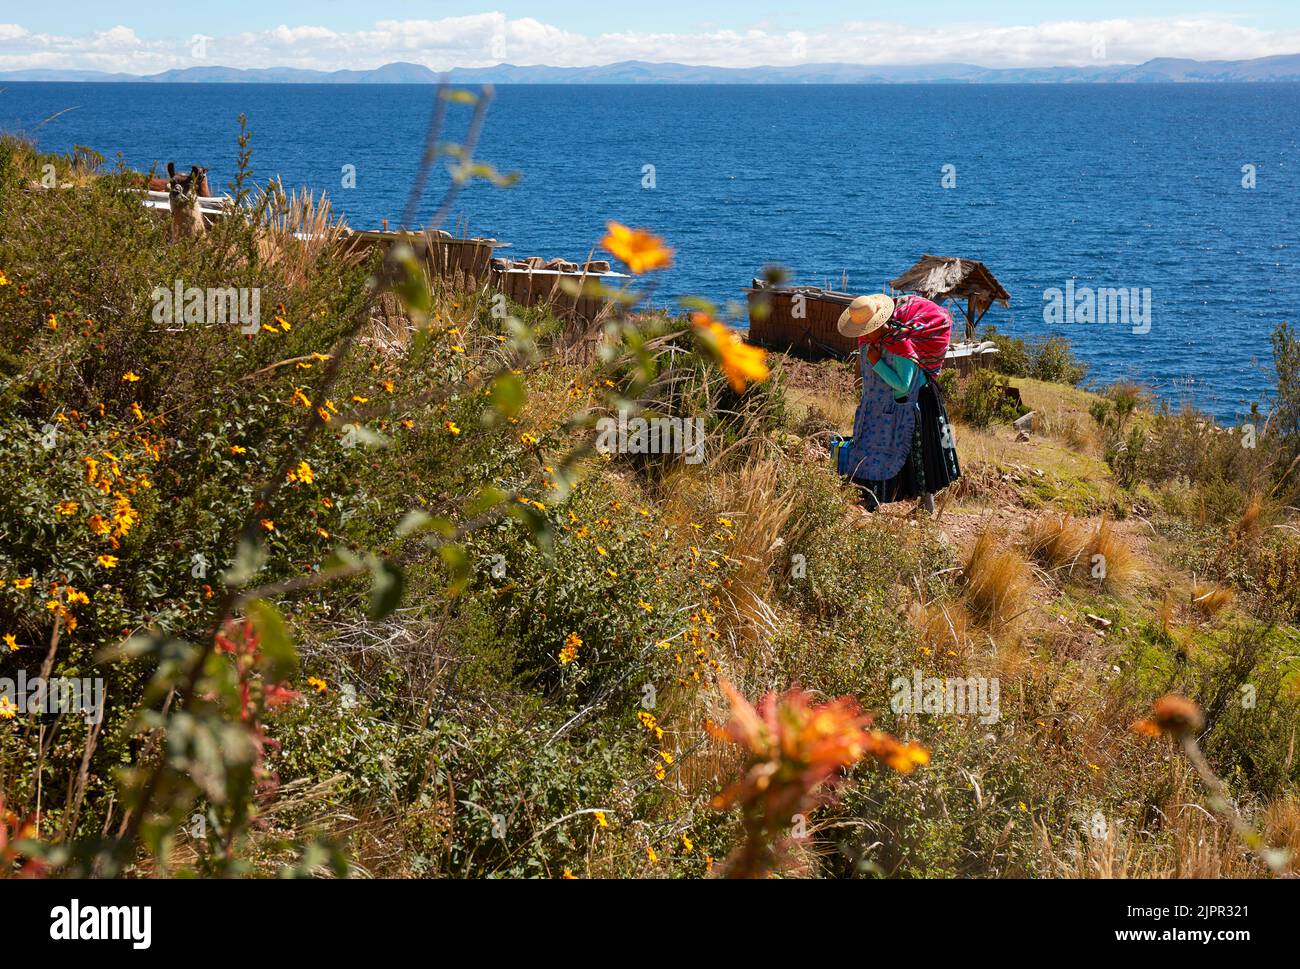 Una mujer boliviana 'chola' con ropa tradicional camina por la 'Isla de la Luna' con el lago Titicaca al fondo, provincia de La Paz, Bolivia. Foto de stock